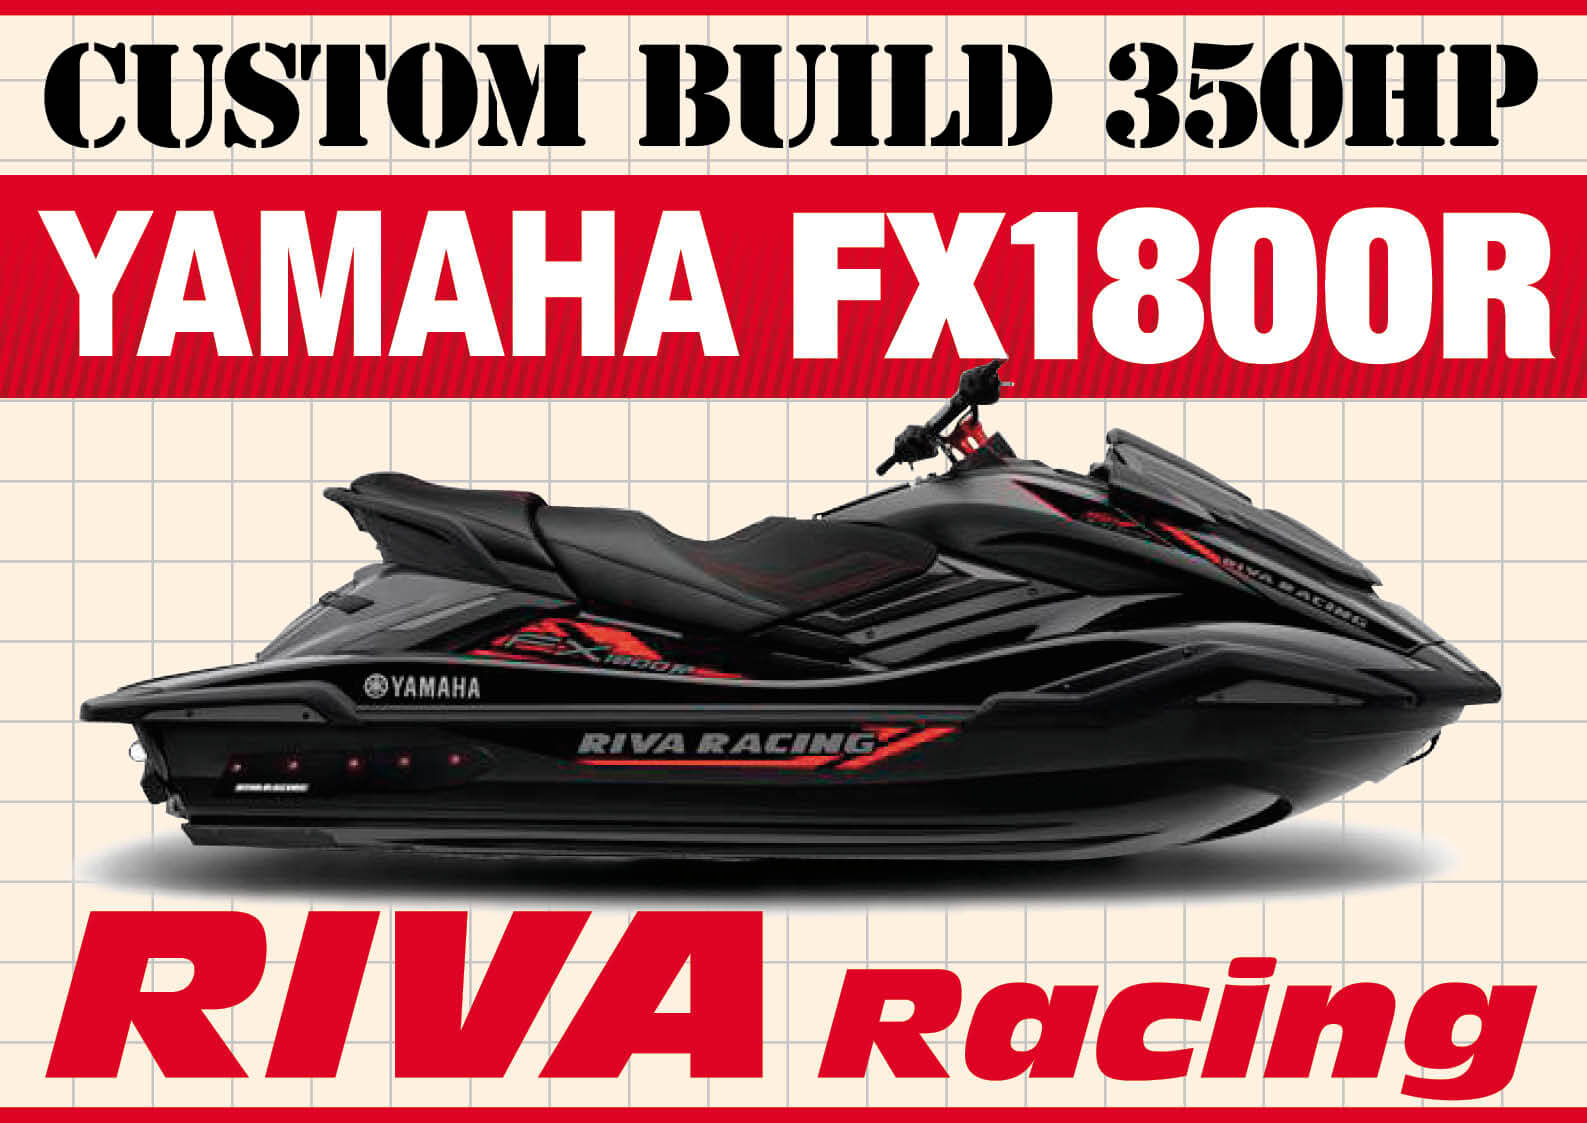 RIVA Racingが造った350馬力の「YAMAHA FX1800R」【動画付き